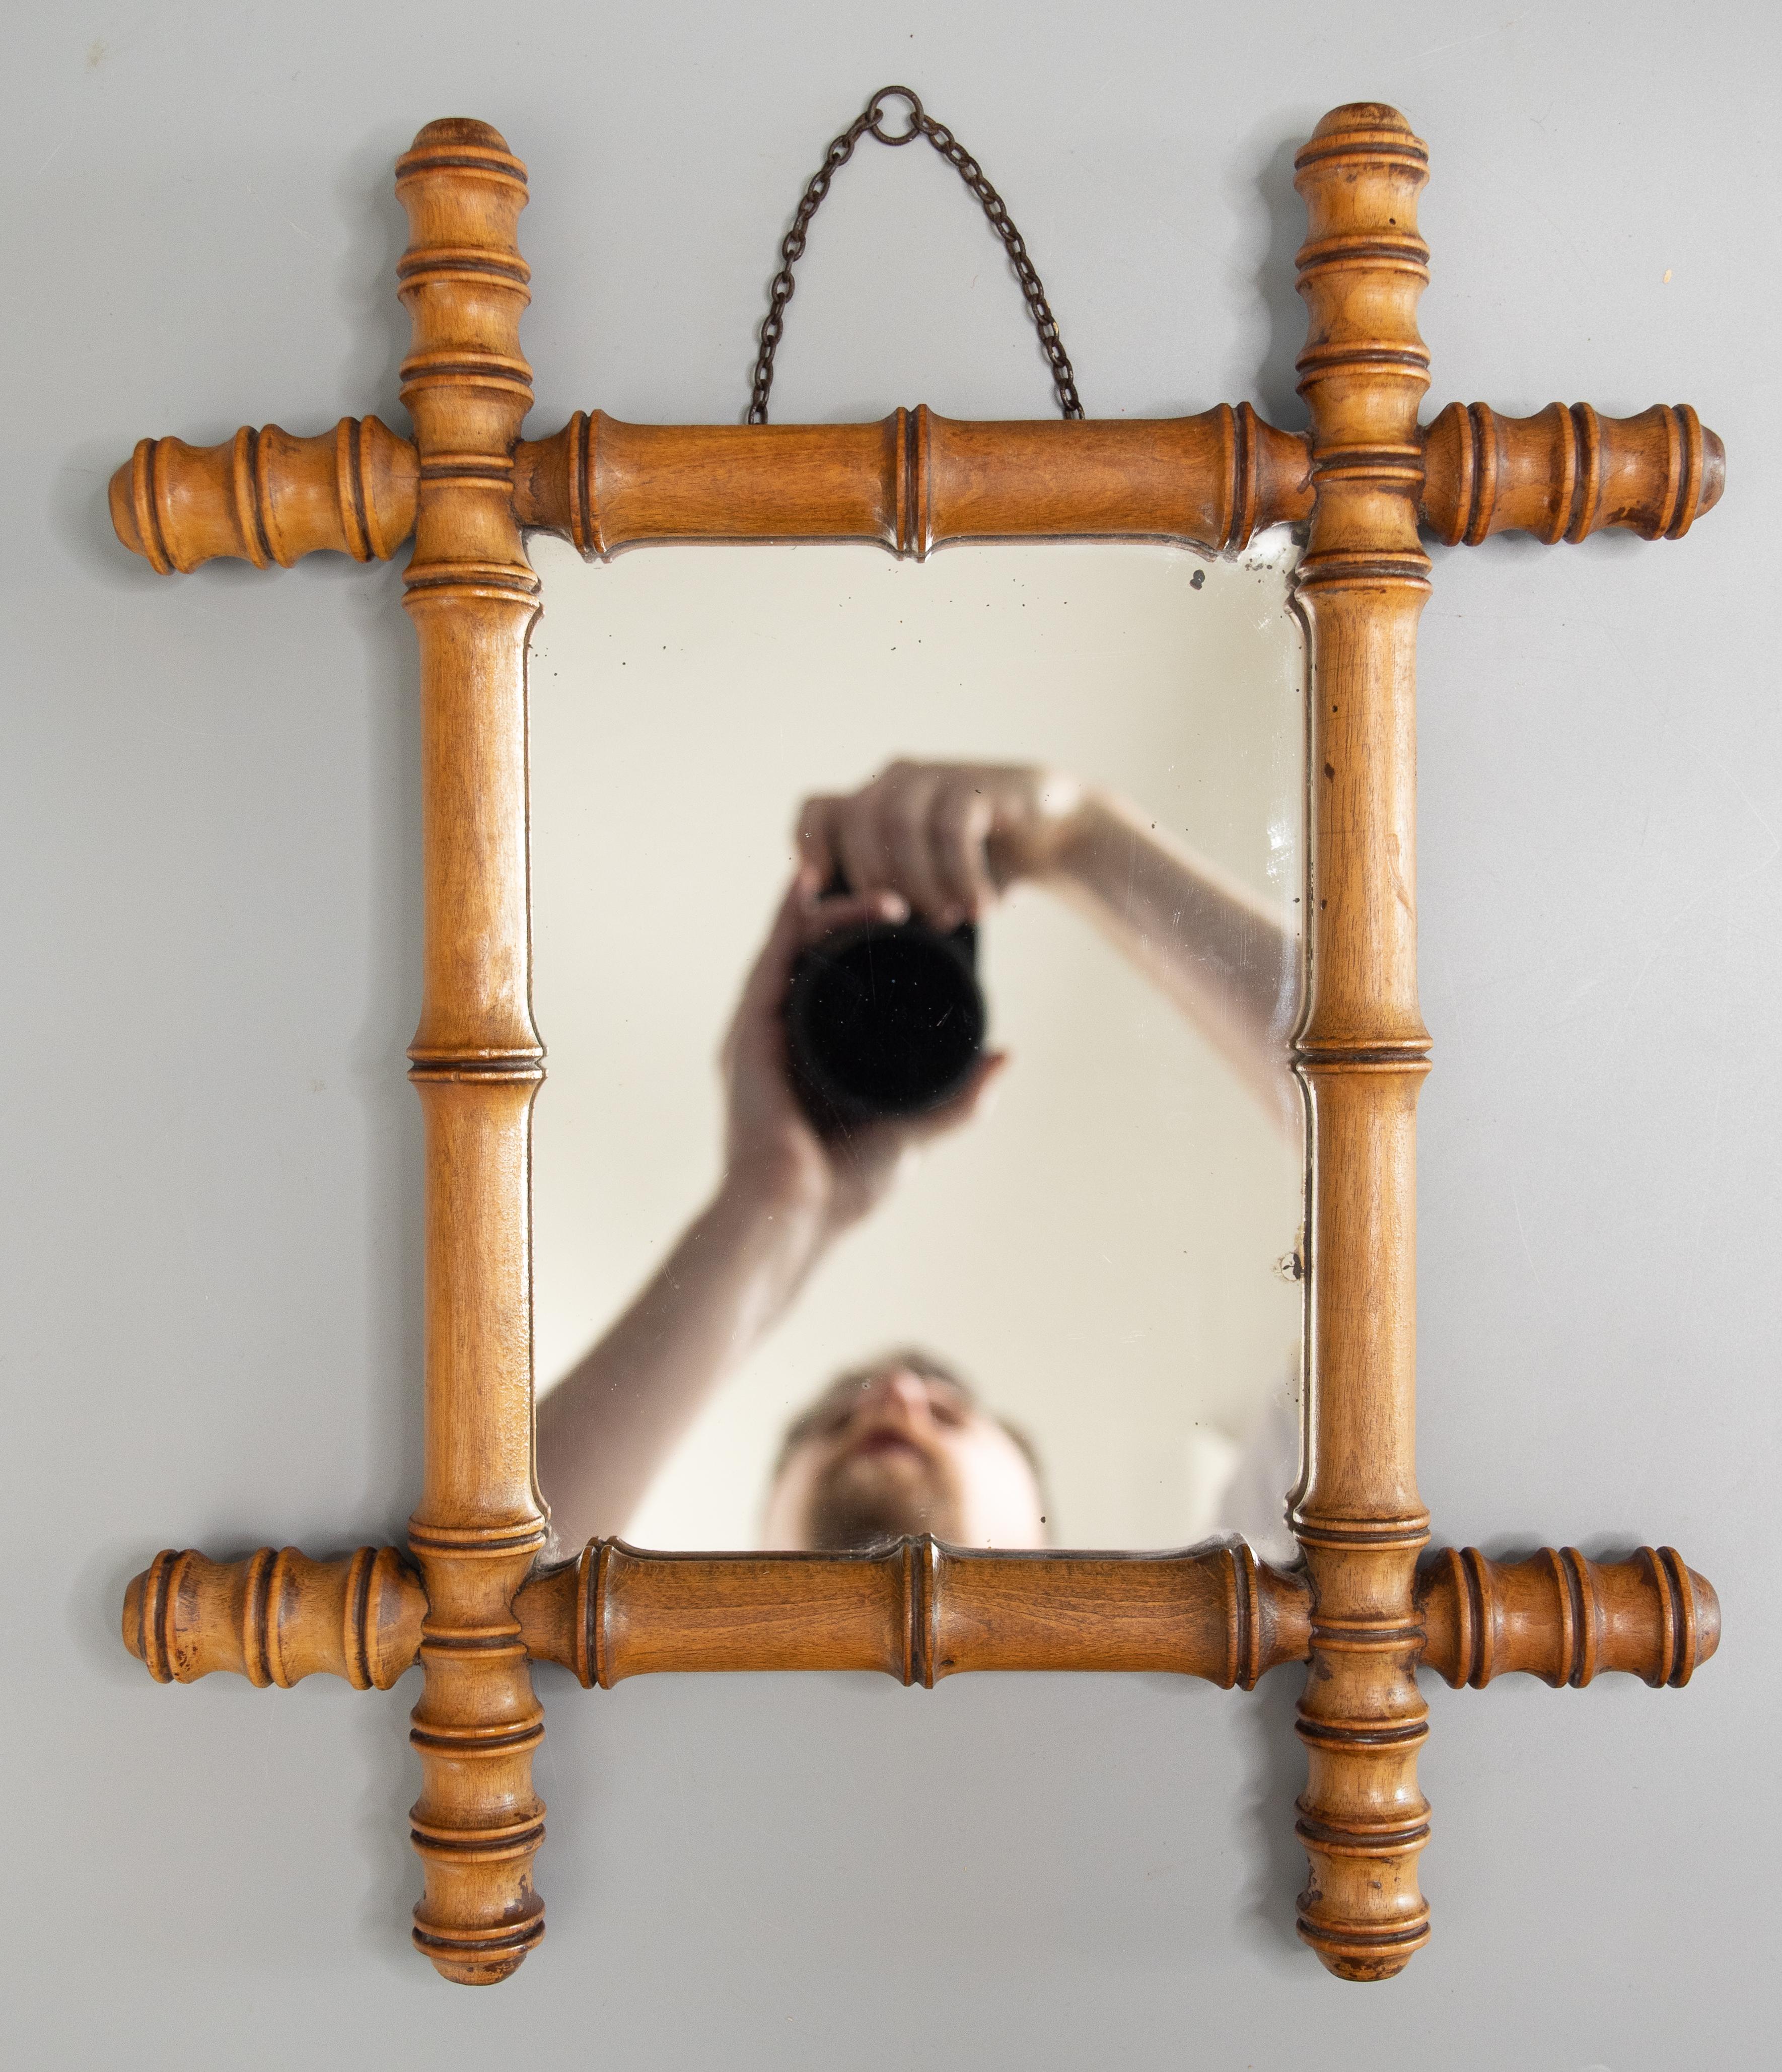 Superbe petit miroir français ancien, sculpté à la main pour ressembler à un bambou, vers 1890. Il conserve le verre et la chaîne de suspension d'origine, et le bois présente une surface et une patine d'origine très agréables. Ajoutez un style